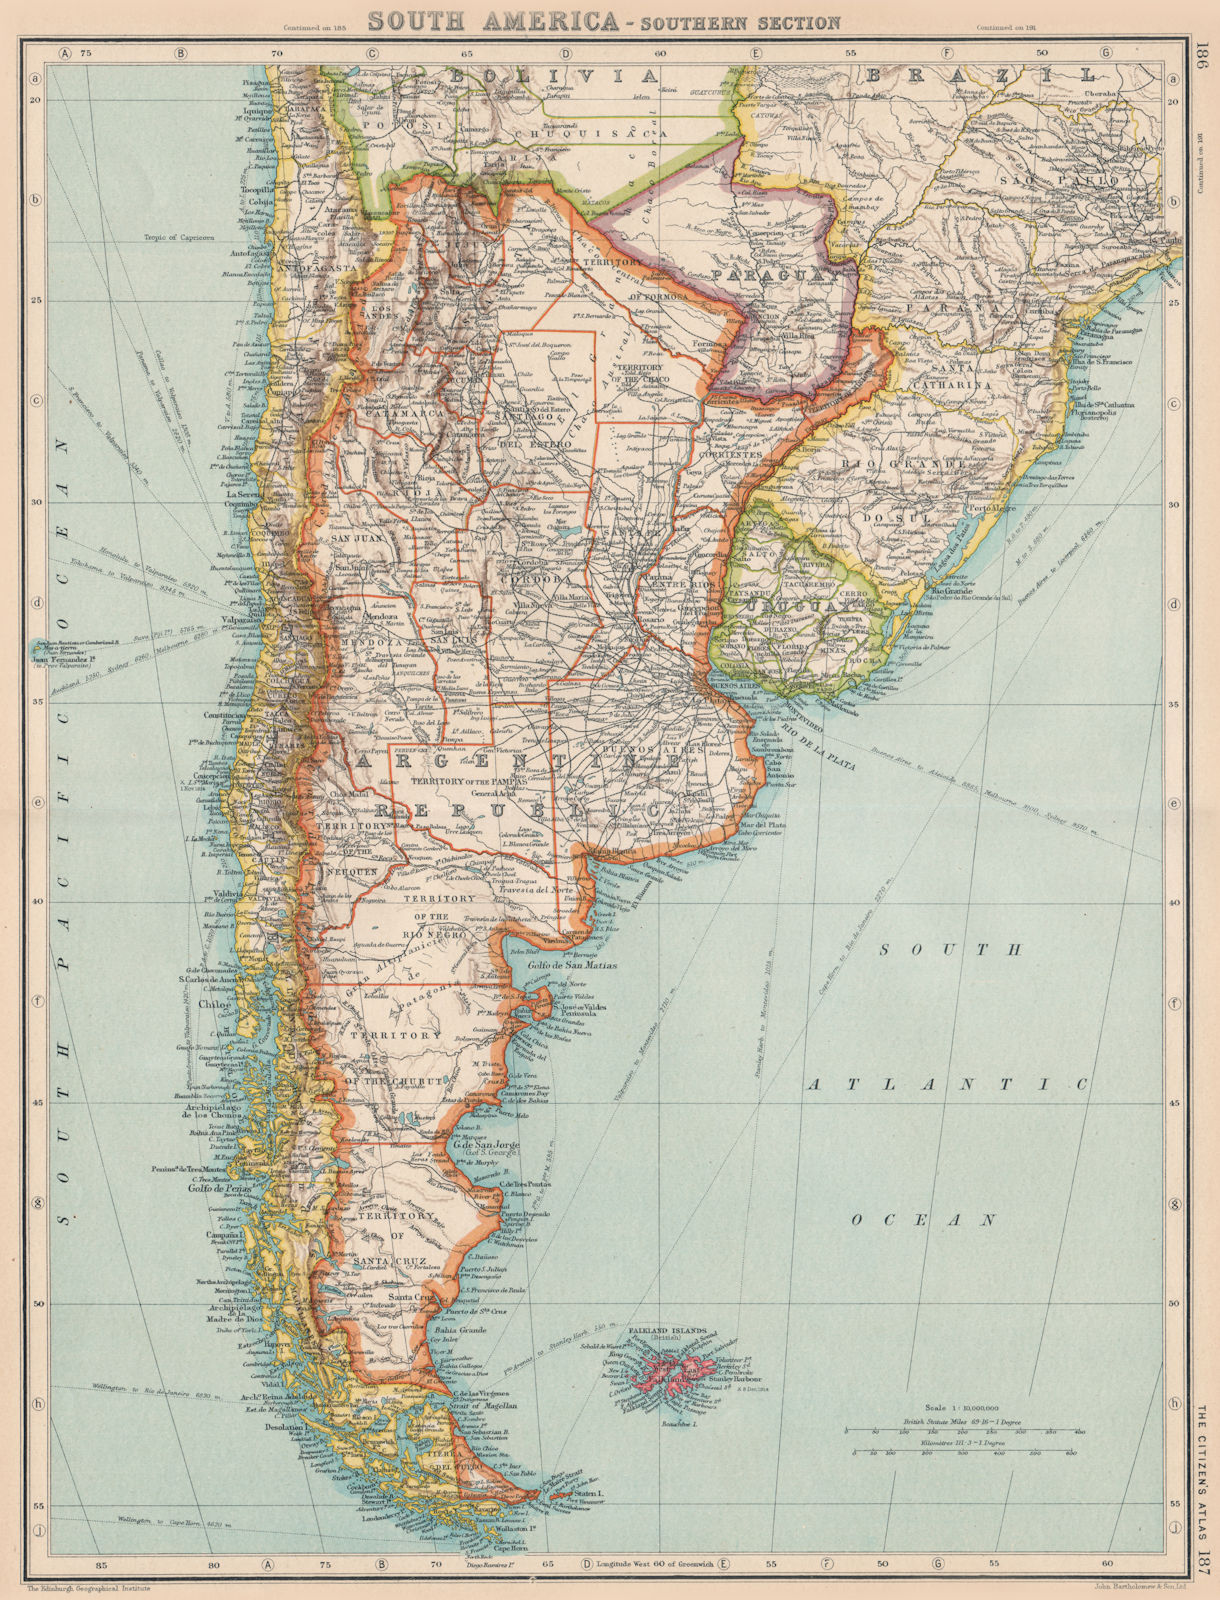 ARGENTINA. + Paraguay Uruguay & Southern Chile. BARTHOLOMEW 1924 old map